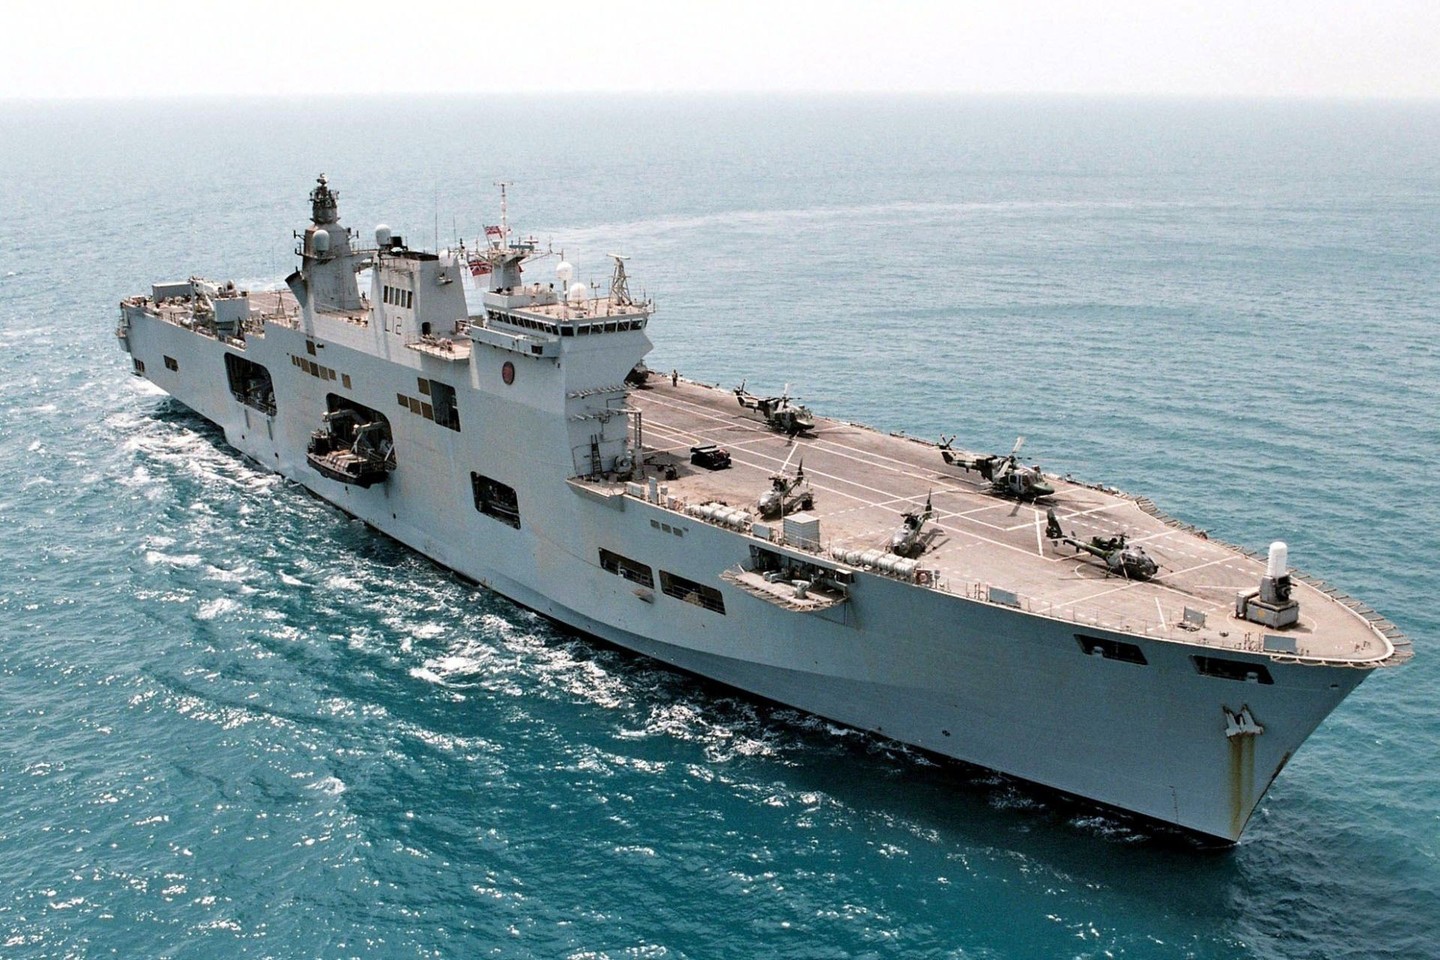 Jungtinė Karalystė į tarptautines pratybas siunčia savo Karališkojo Laivyno flagmaną – desantinį laivą „HMS Ocean“<br>ViDA Press nuotr.